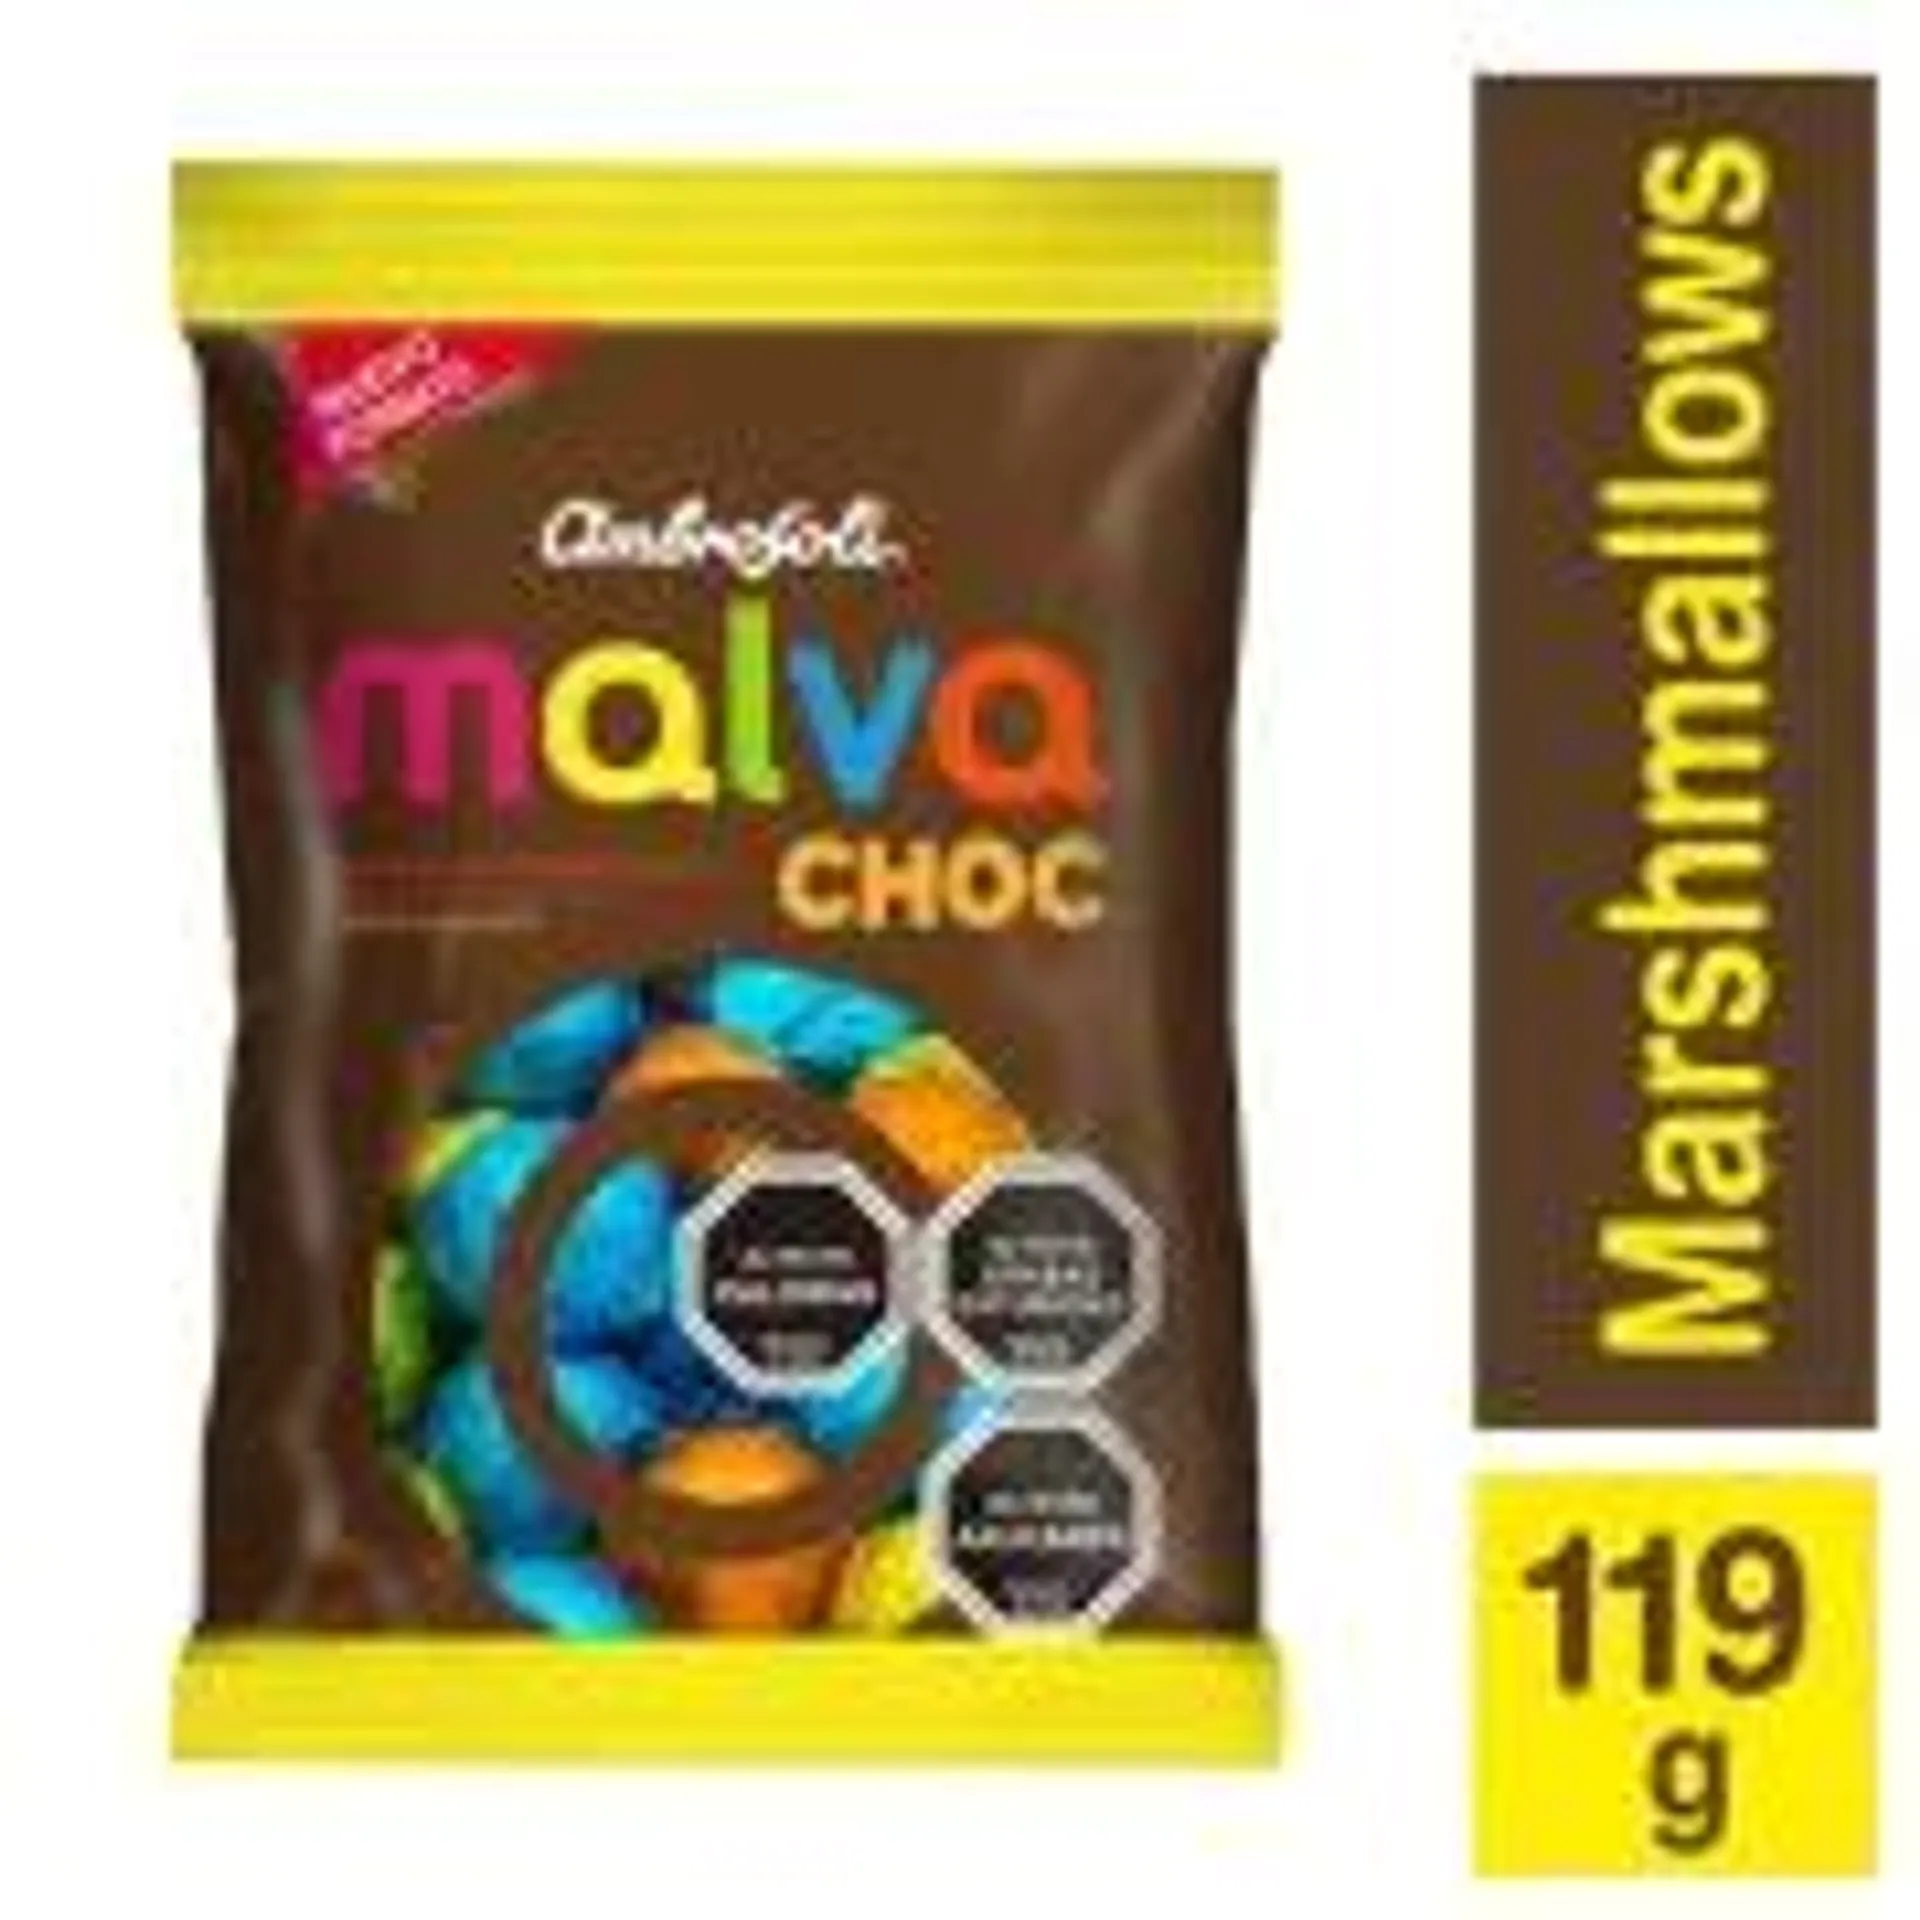 Chocolate Malva Choc, 119 g